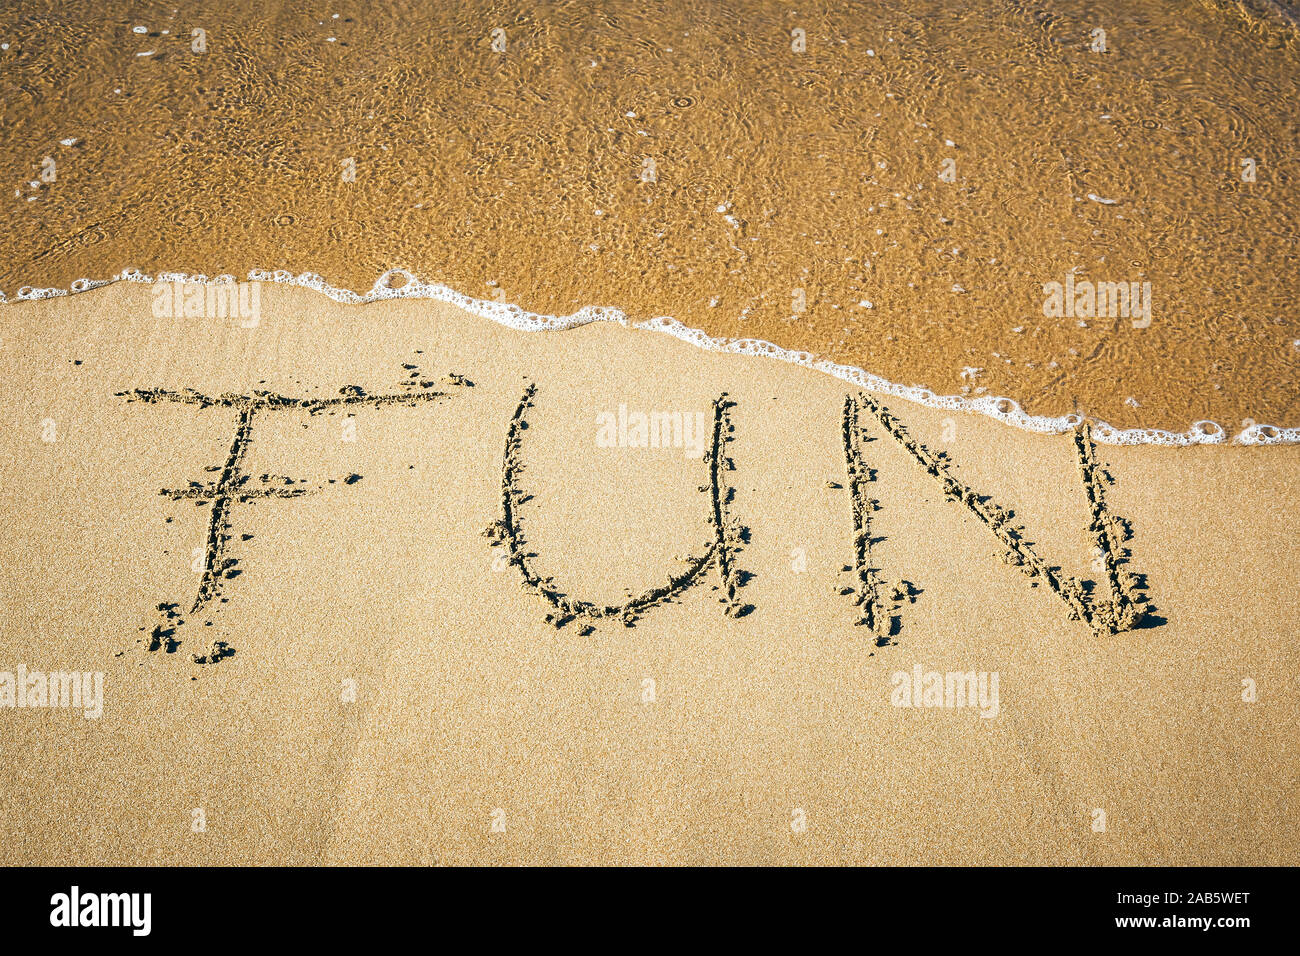 Ein Sandstrand, auf dem 'Fun' geschrieben steht. Stock Photo